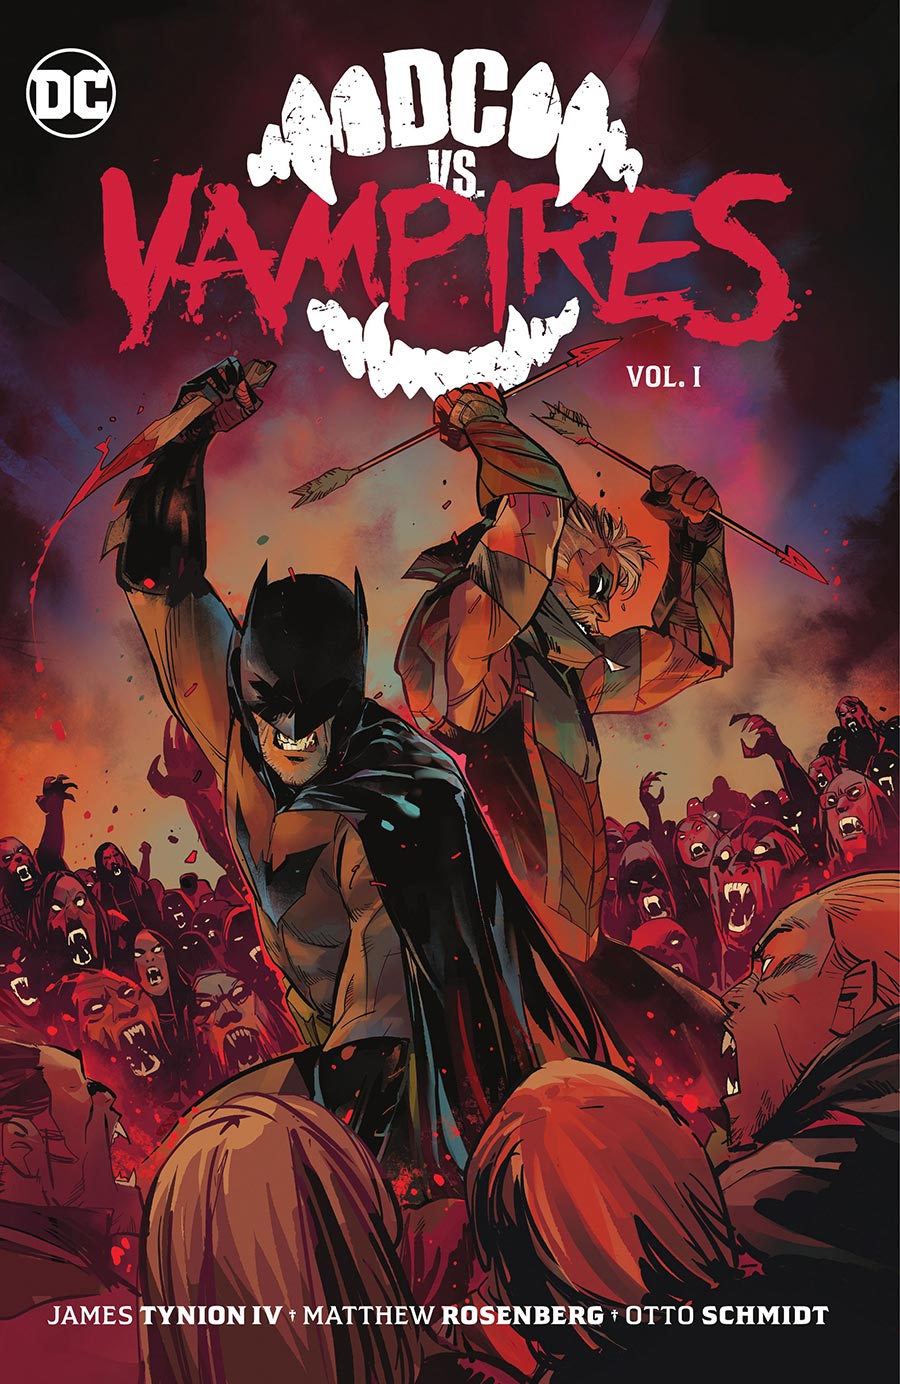 DC vs Vampires Vol 1 TP